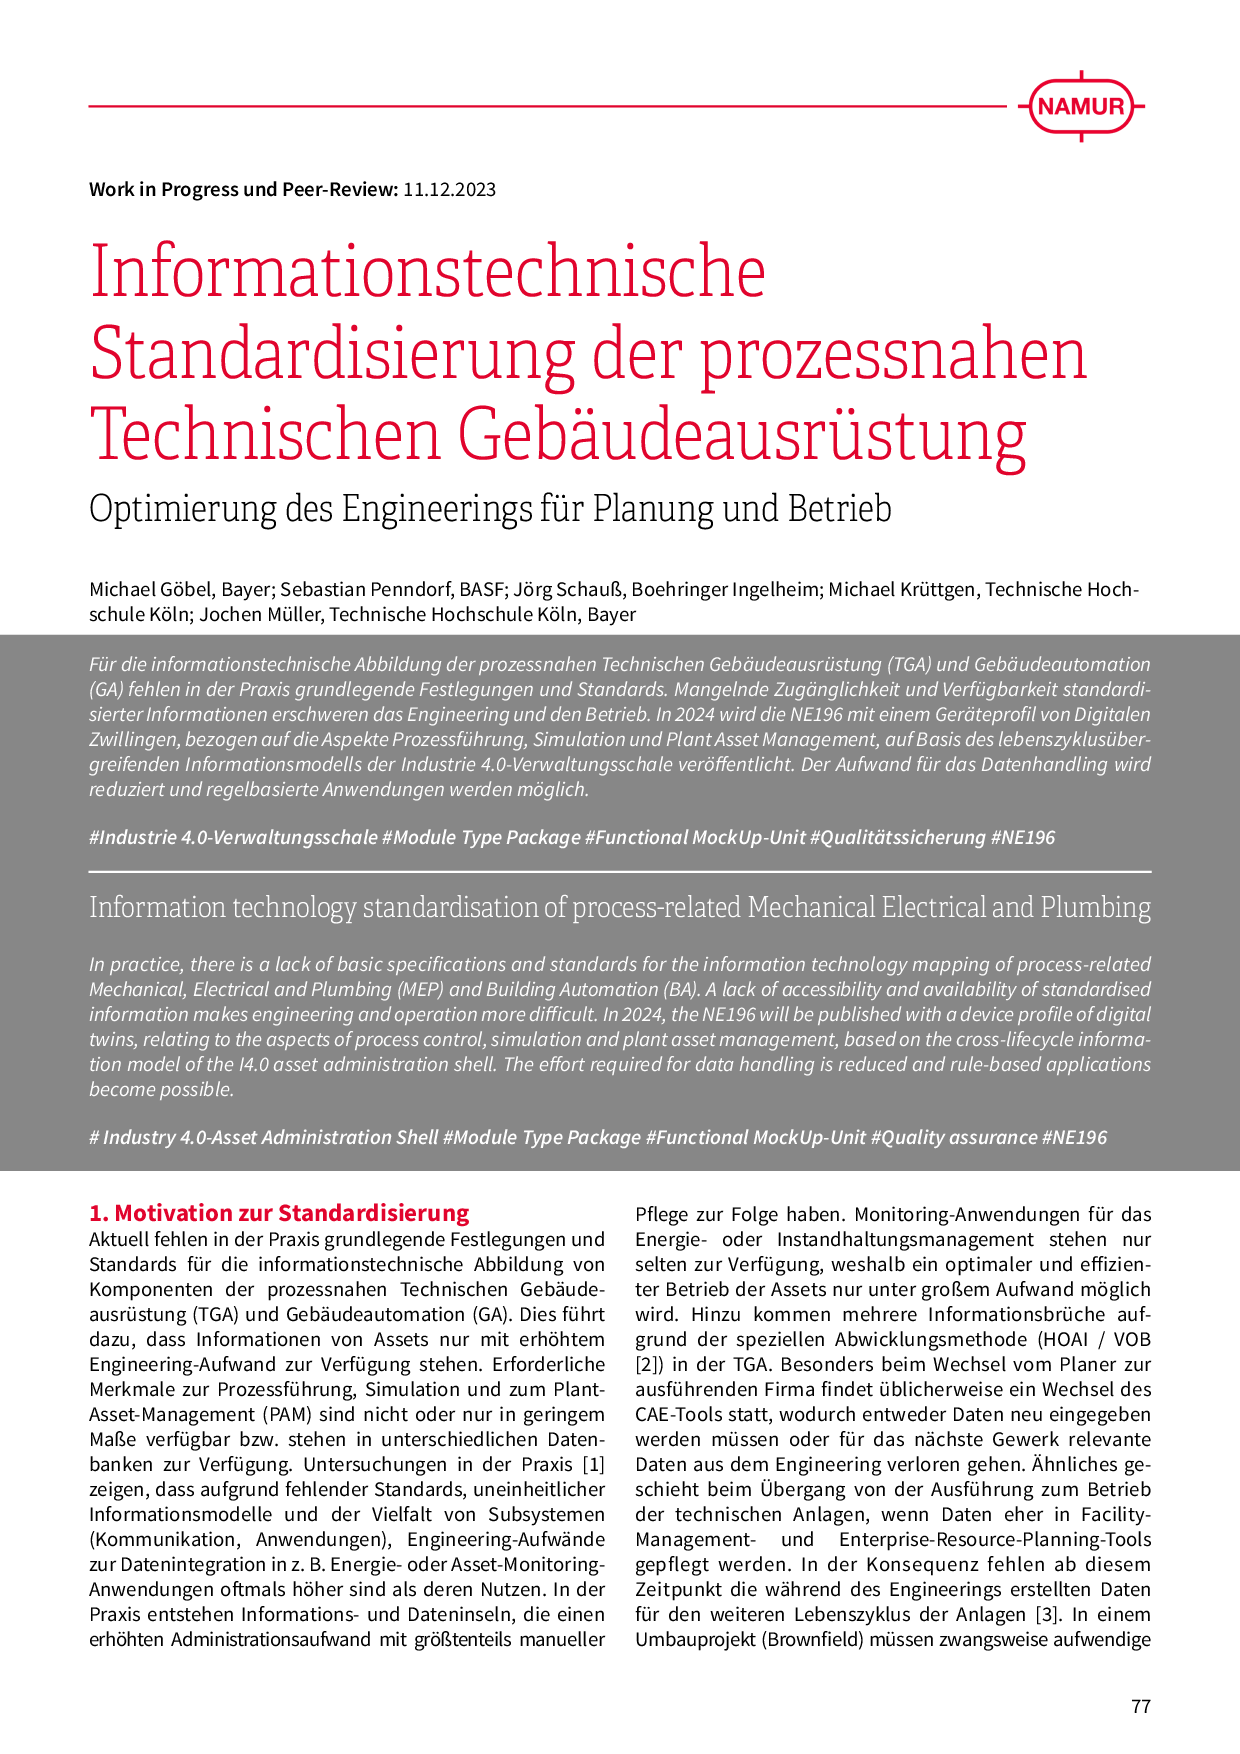 Informationstechnische Standardisierung der prozessnahen Technischen Gebäudeausrüstung